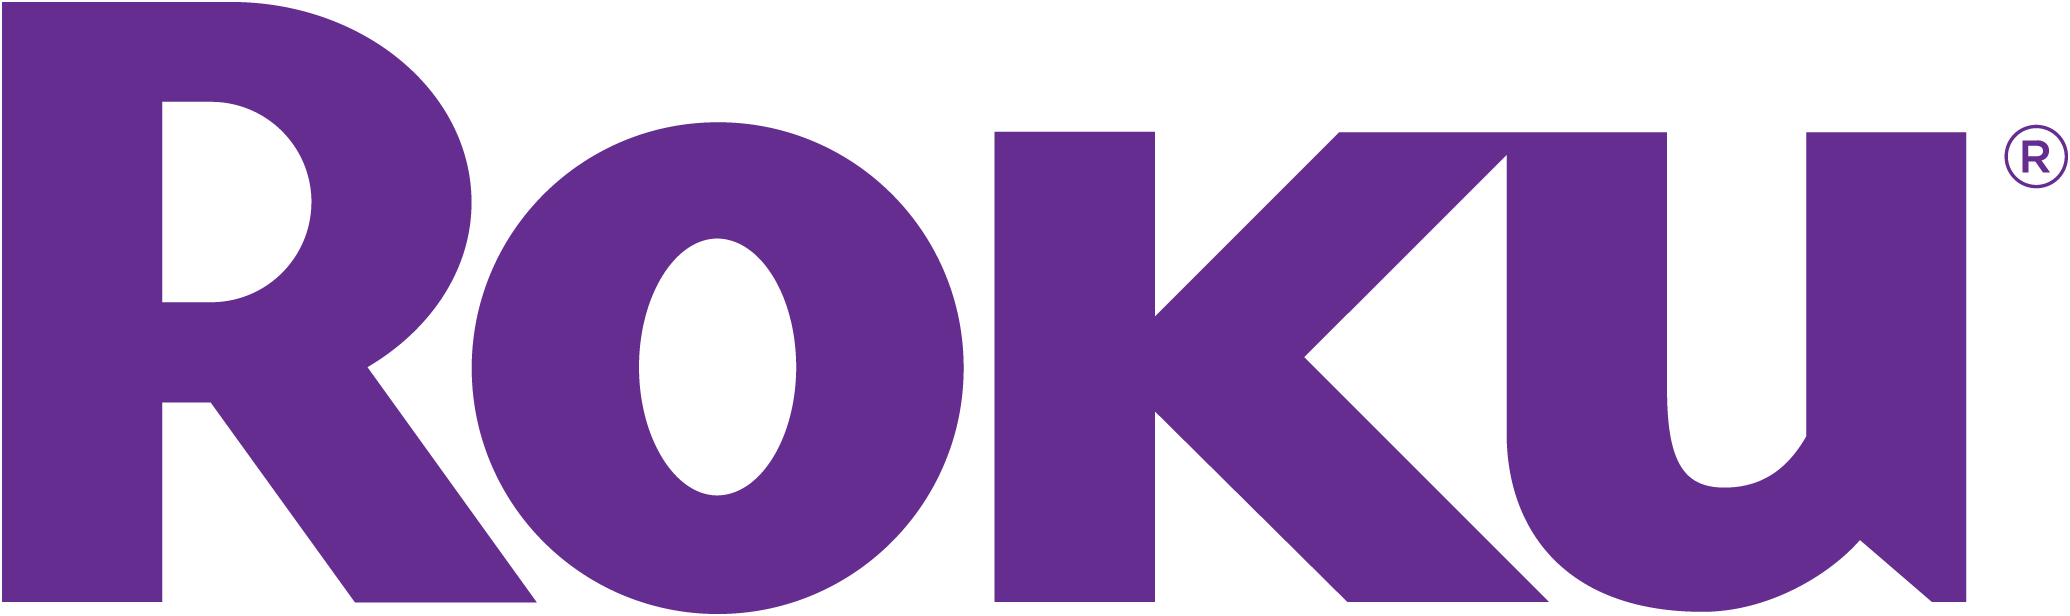 파일:roku-logo.png